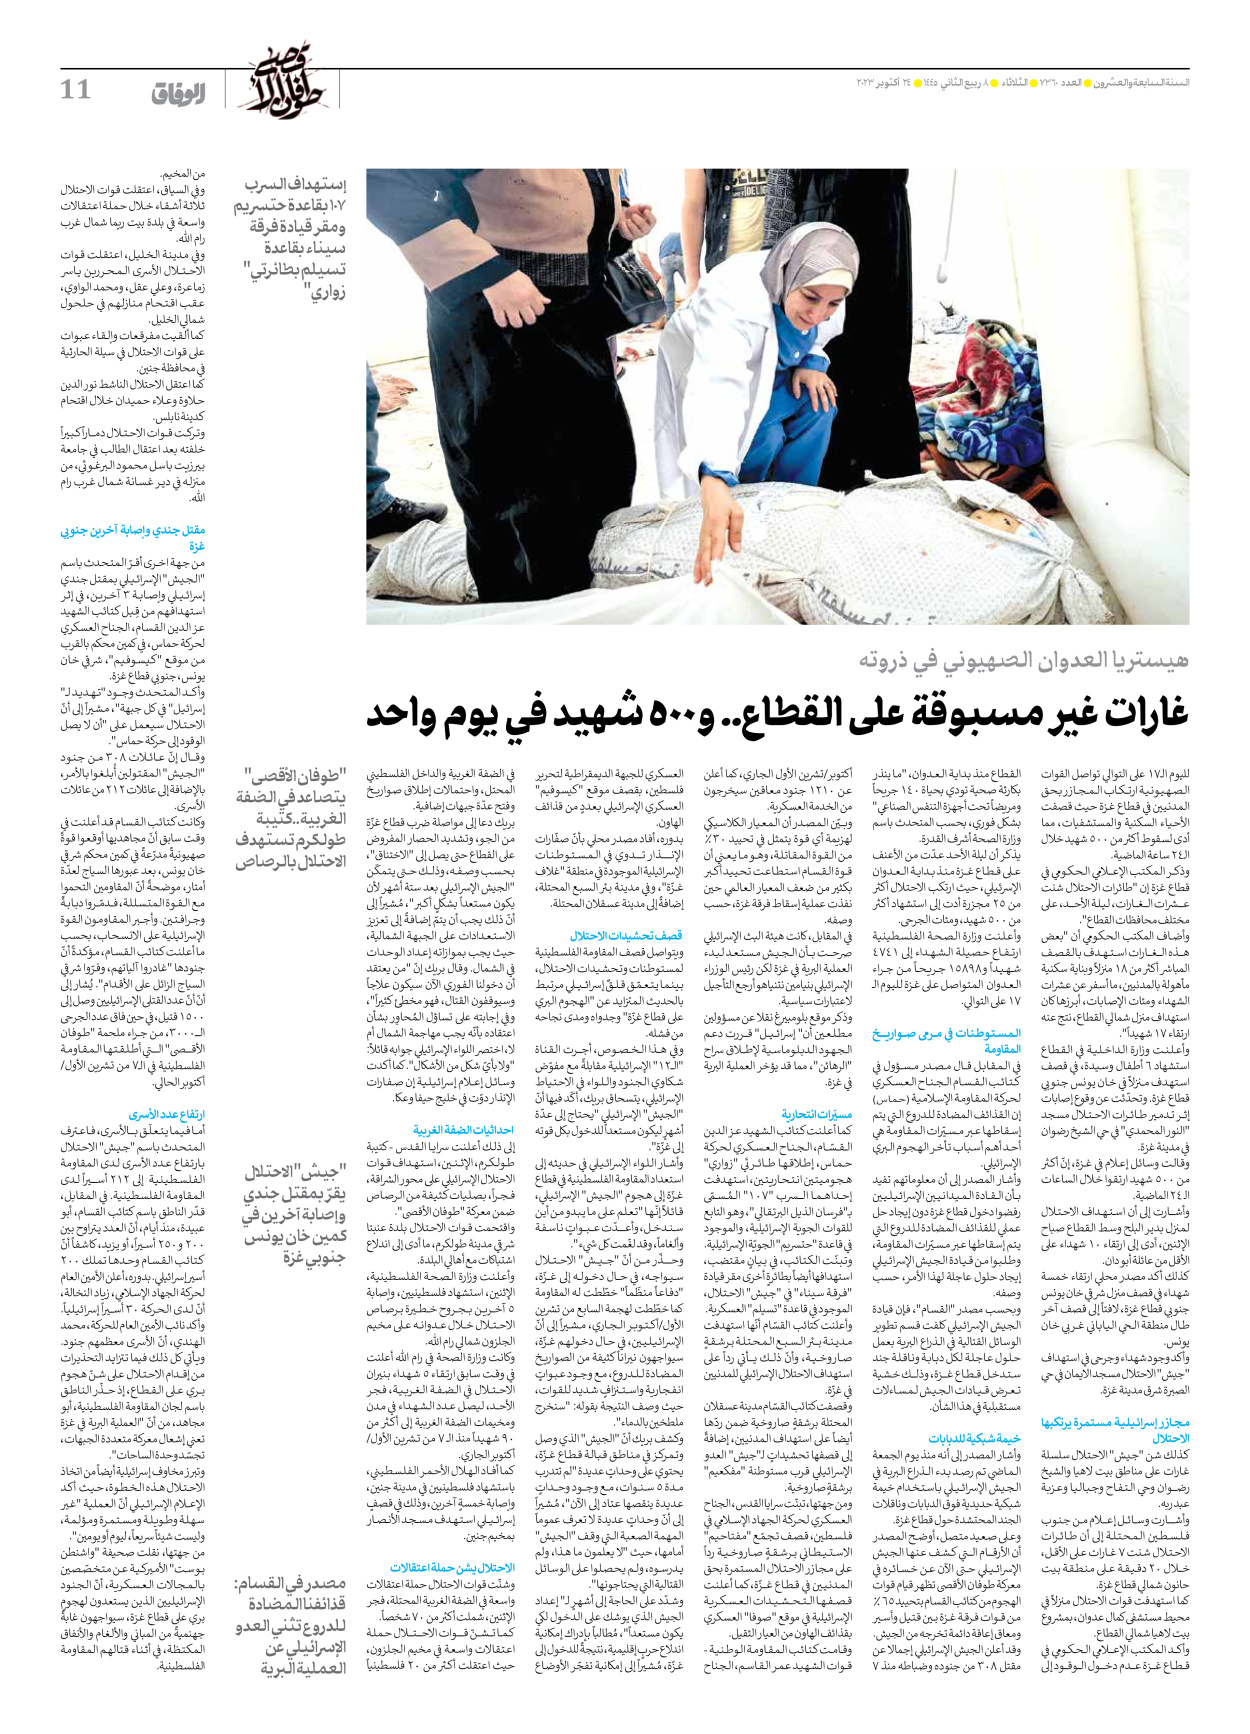 صحیفة ایران الدولیة الوفاق - العدد سبعة آلاف وثلاثمائة وستون - ٢٤ أكتوبر ٢٠٢٣ - الصفحة ۱۱